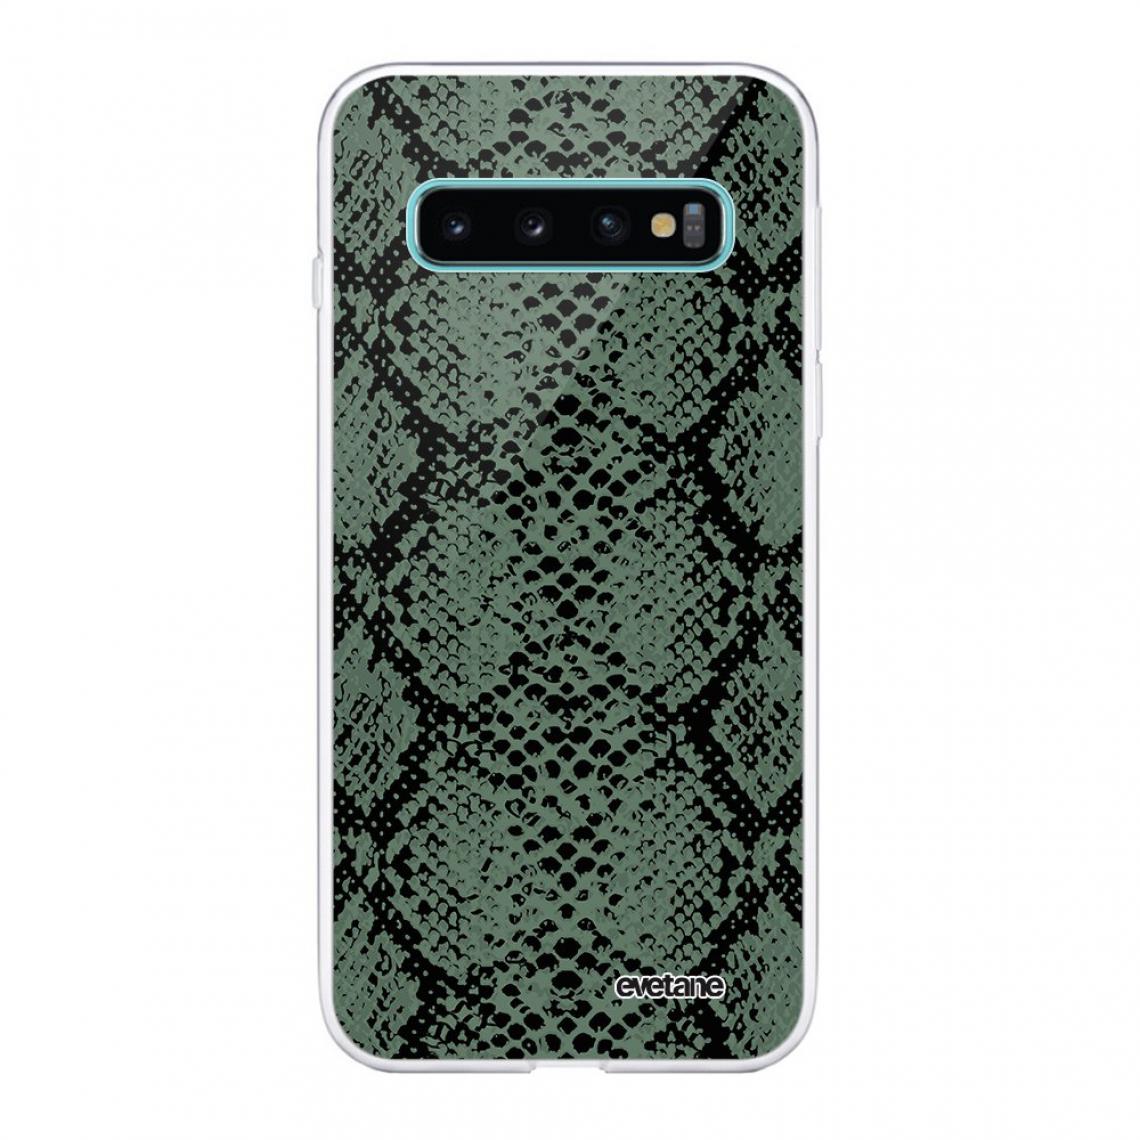 Evetane - Coque Samsung Galaxy S10 Plus souple silicone transparente - Coque, étui smartphone